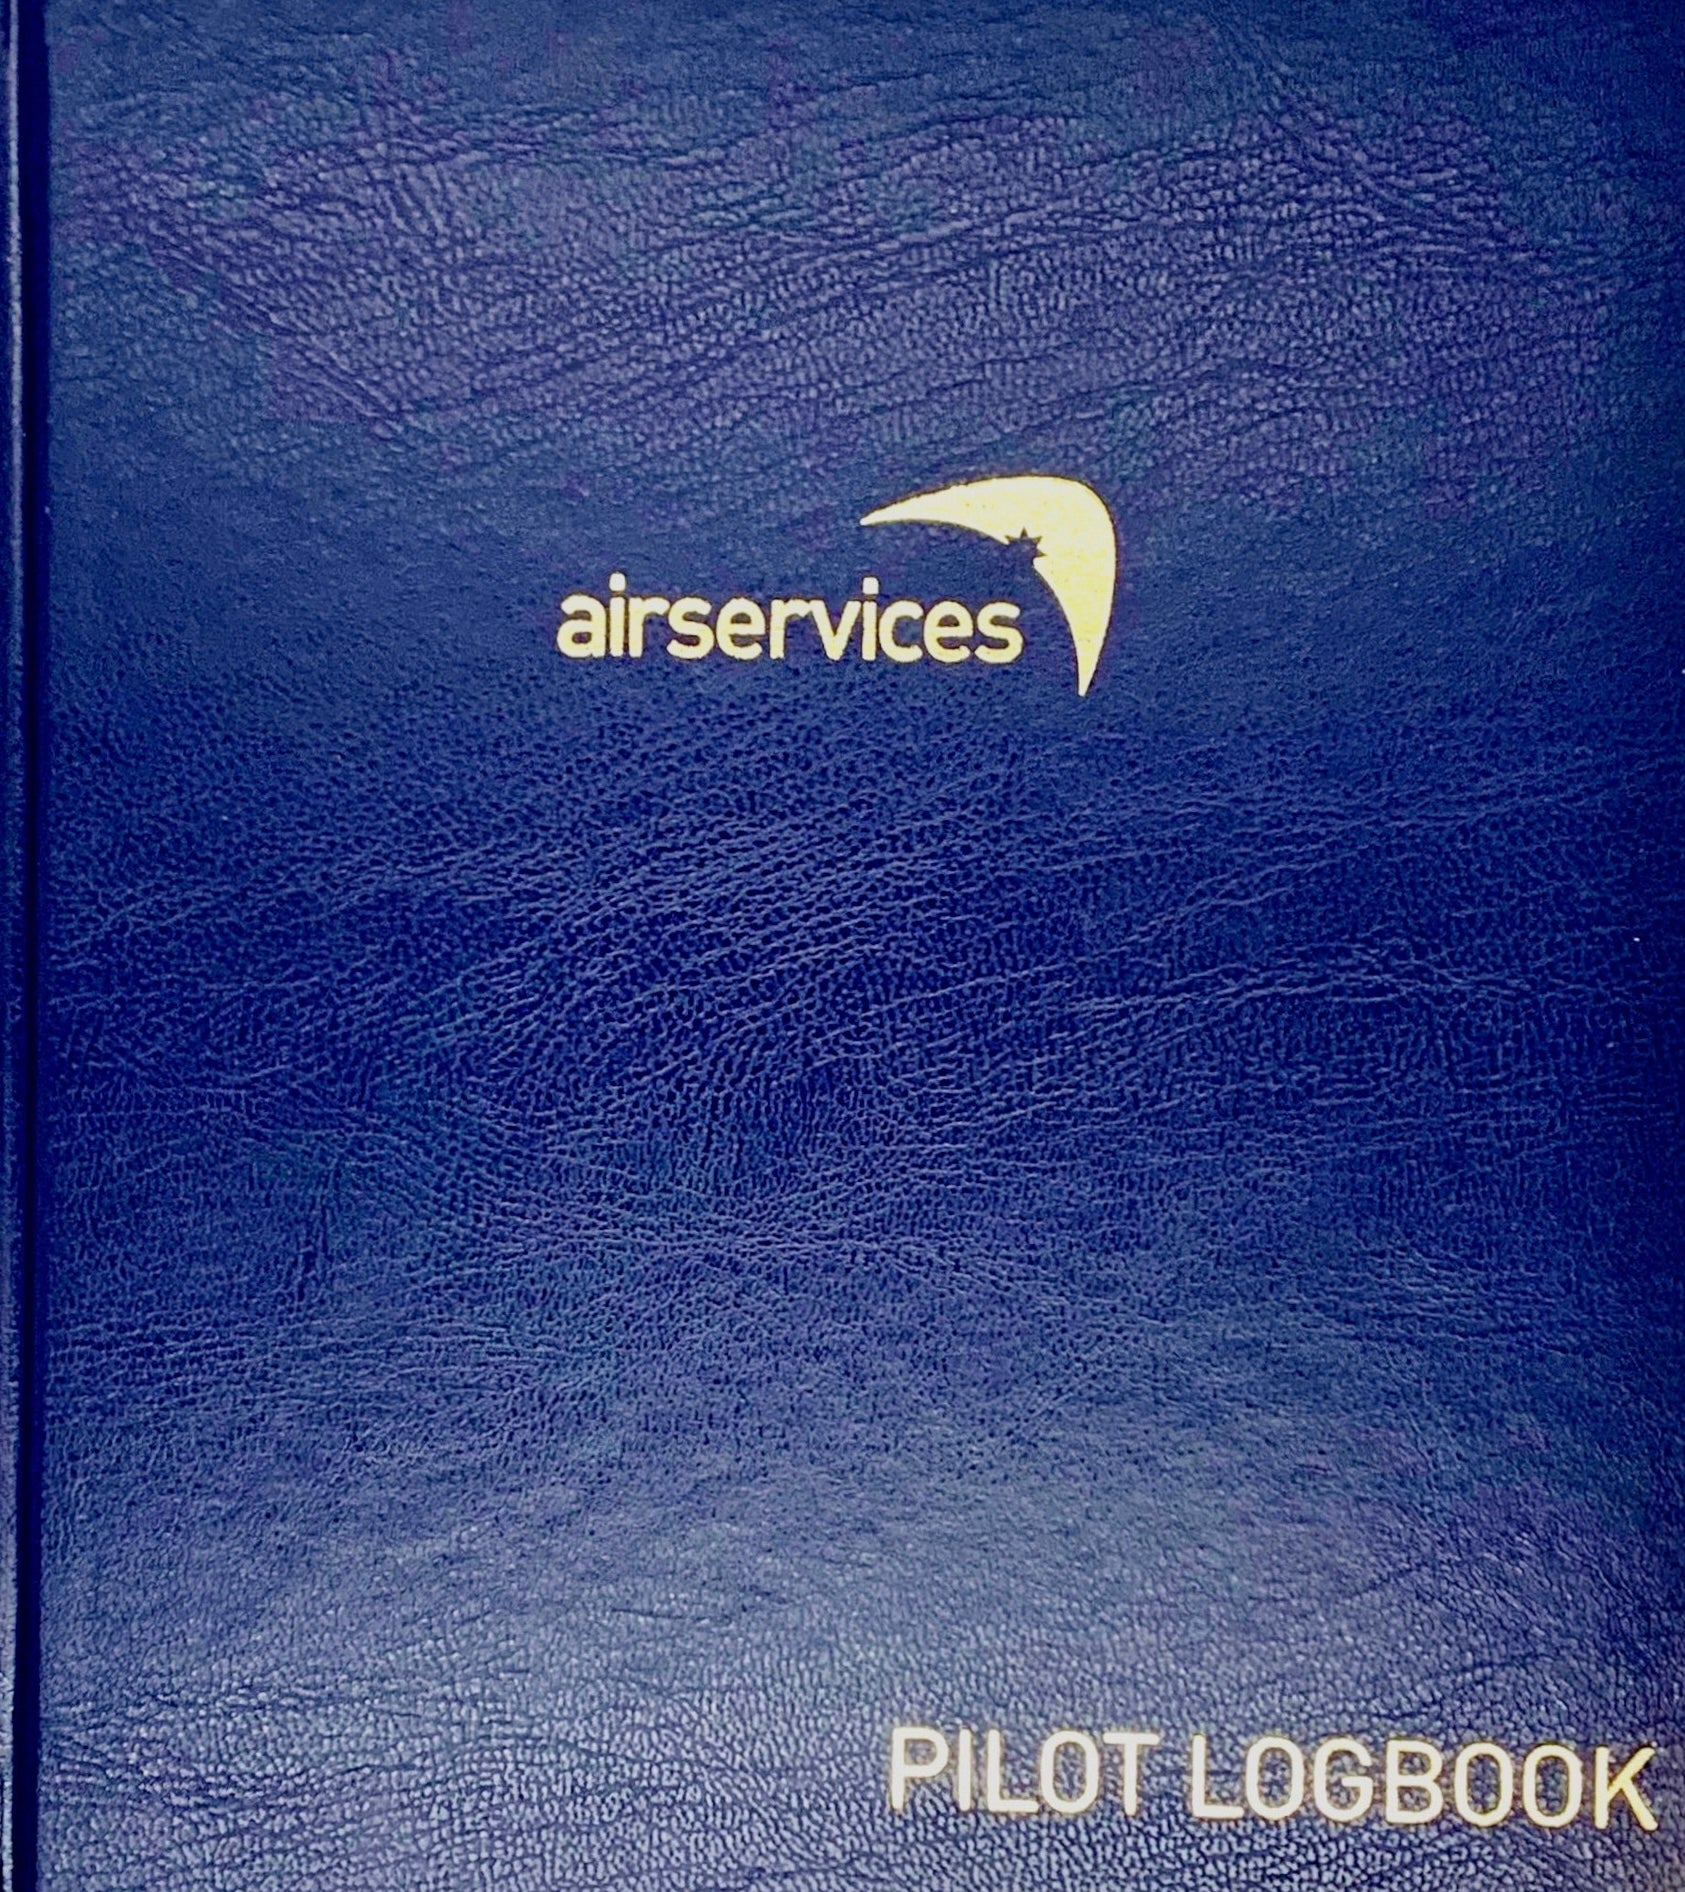 Airservices Australia Pilot Logbook